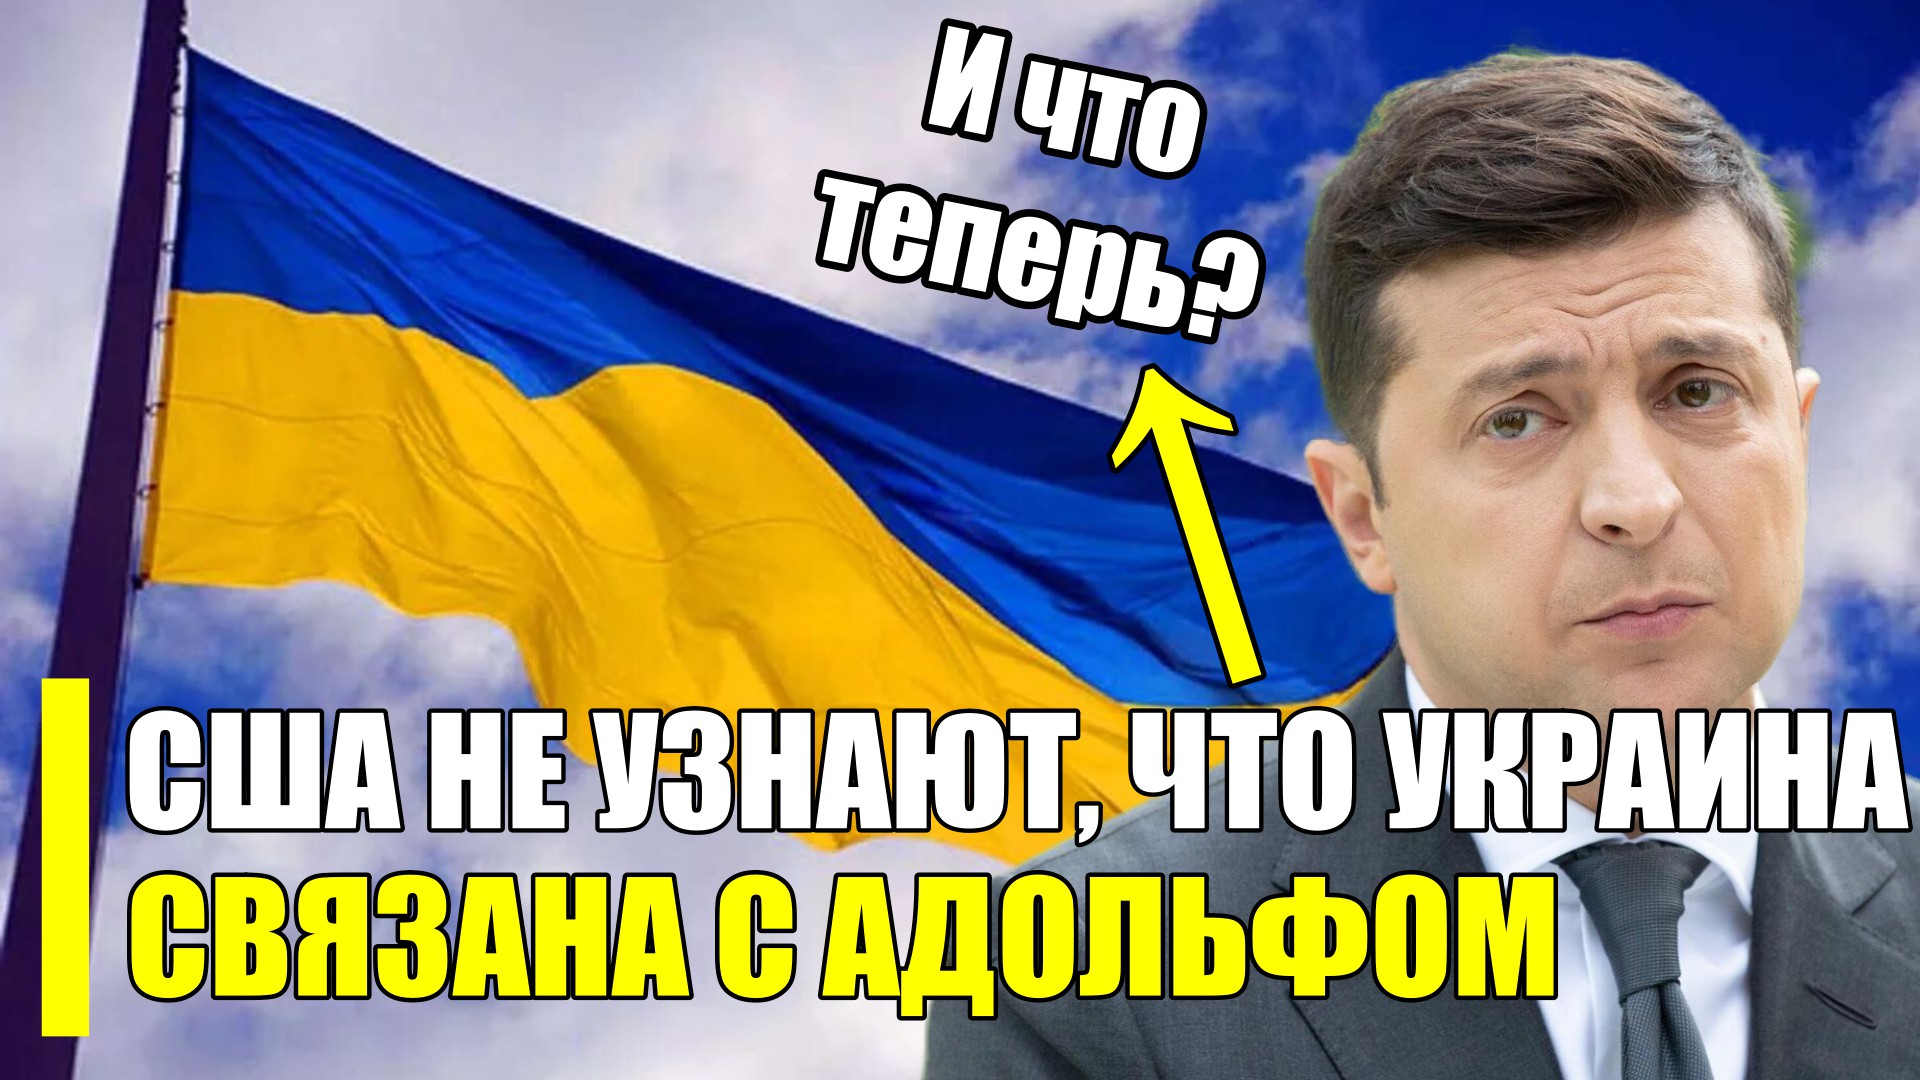 Факты украина новости. Украинские политики. Факты о Украине.